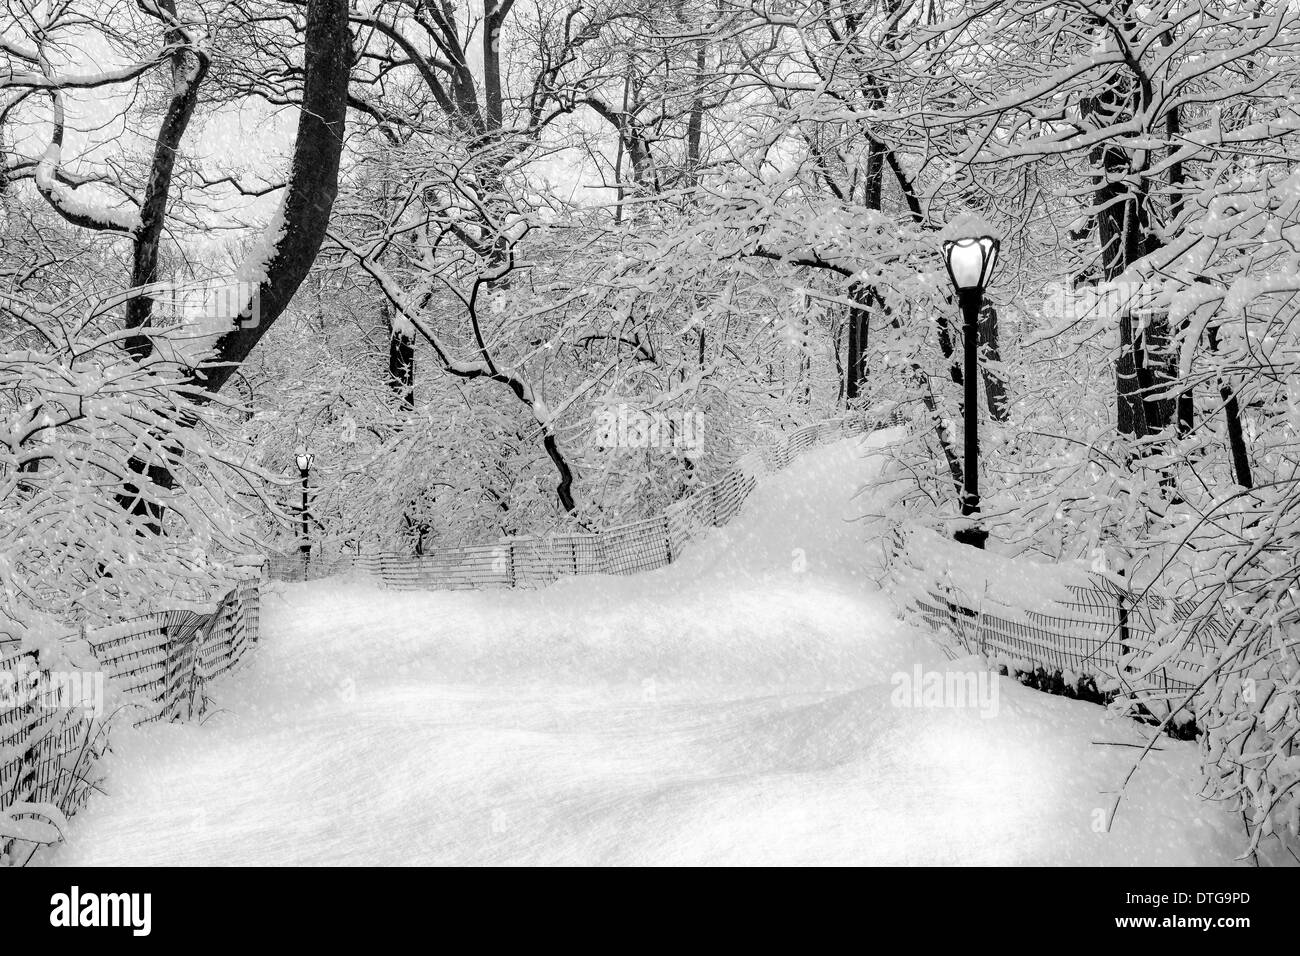 Central Park à New York City est habillé en blanc au cours d'une tempête de neige. Banque D'Images